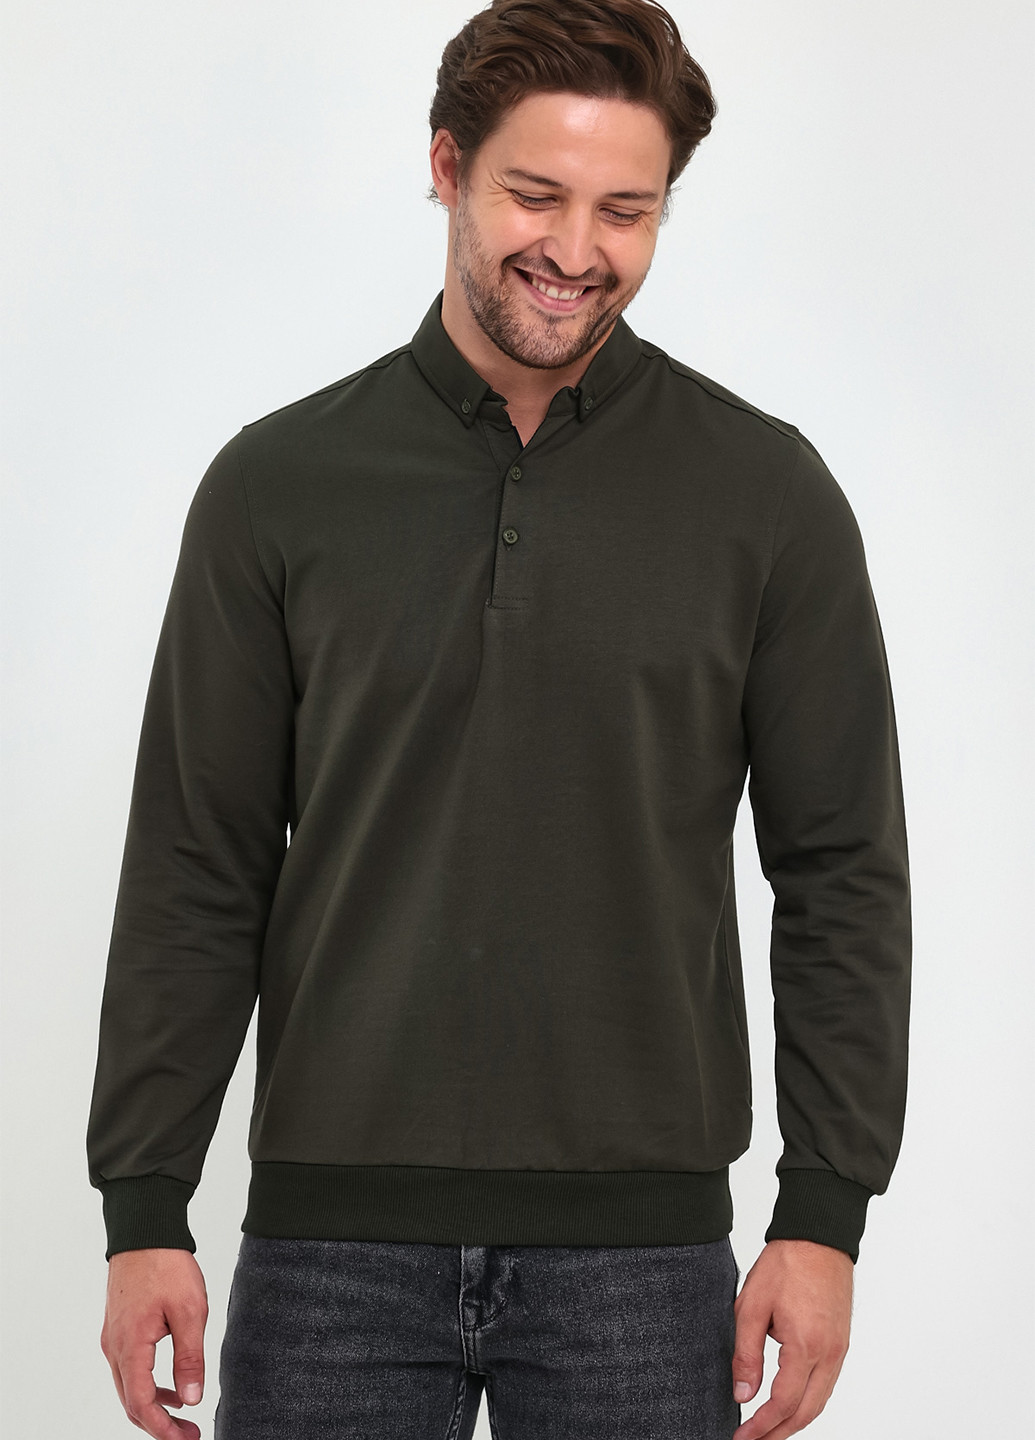 Оливковая (хаки) футболка-поло для мужчин Trend Collection однотонная